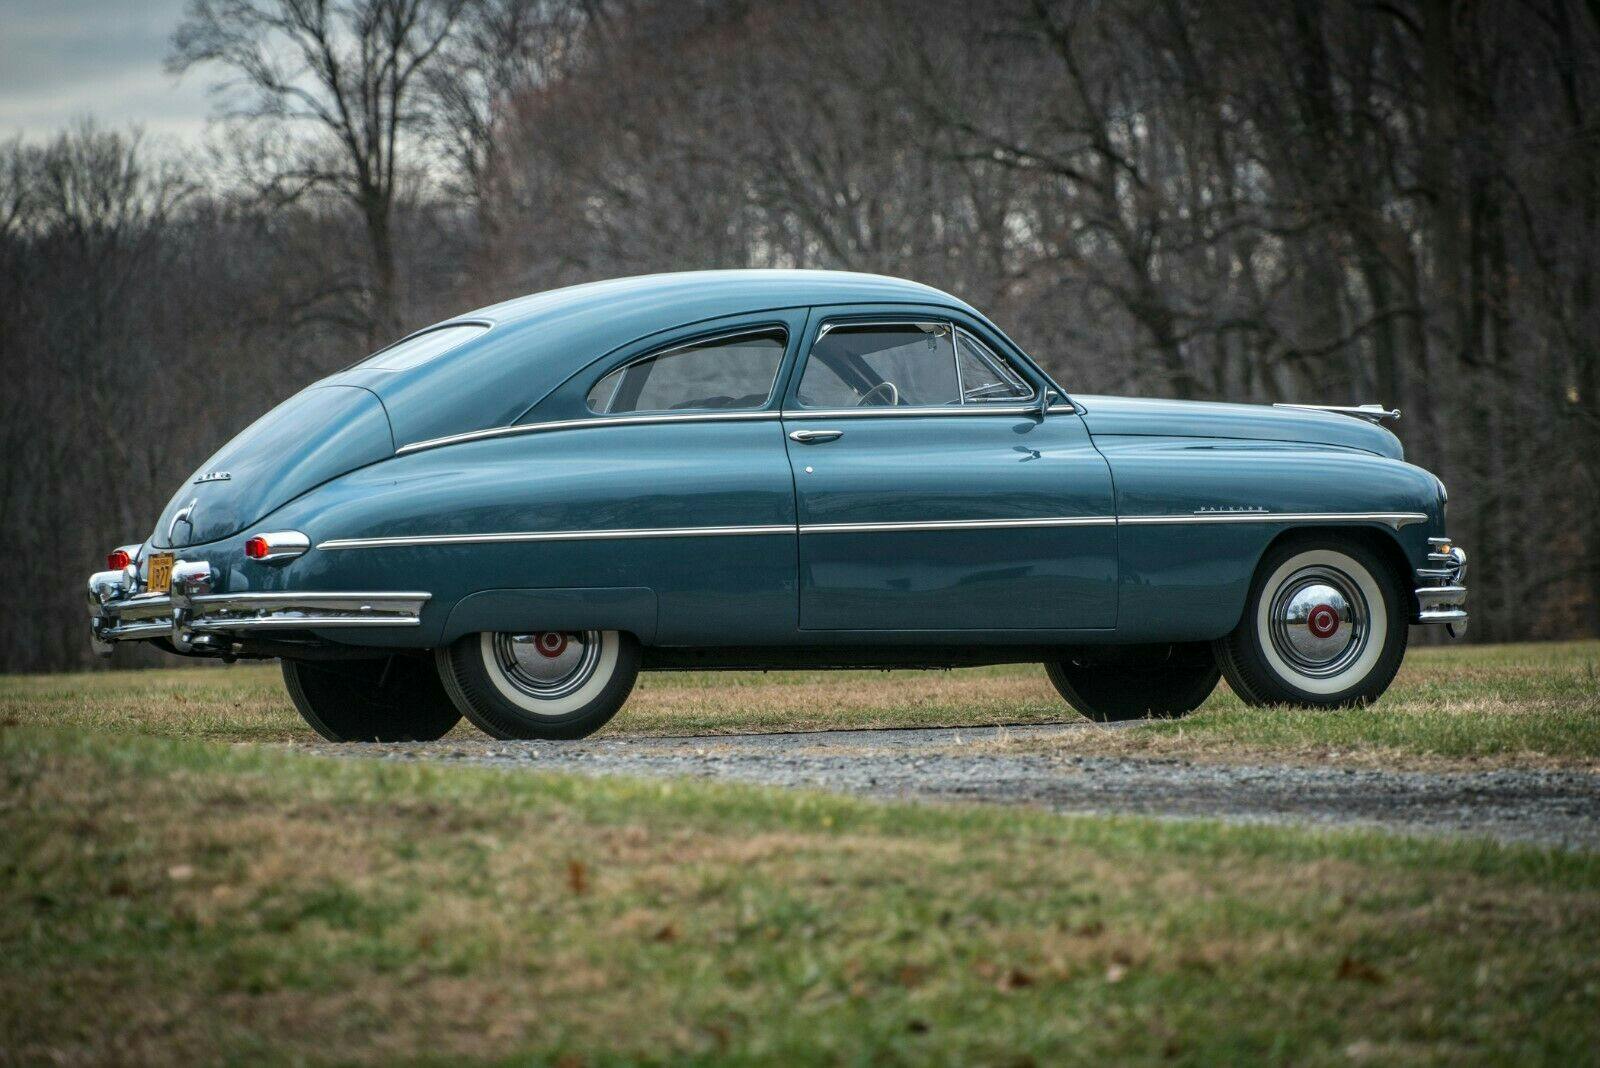 1949 Packard Deluxe Club Sedan - Full Passenger Side - Profile